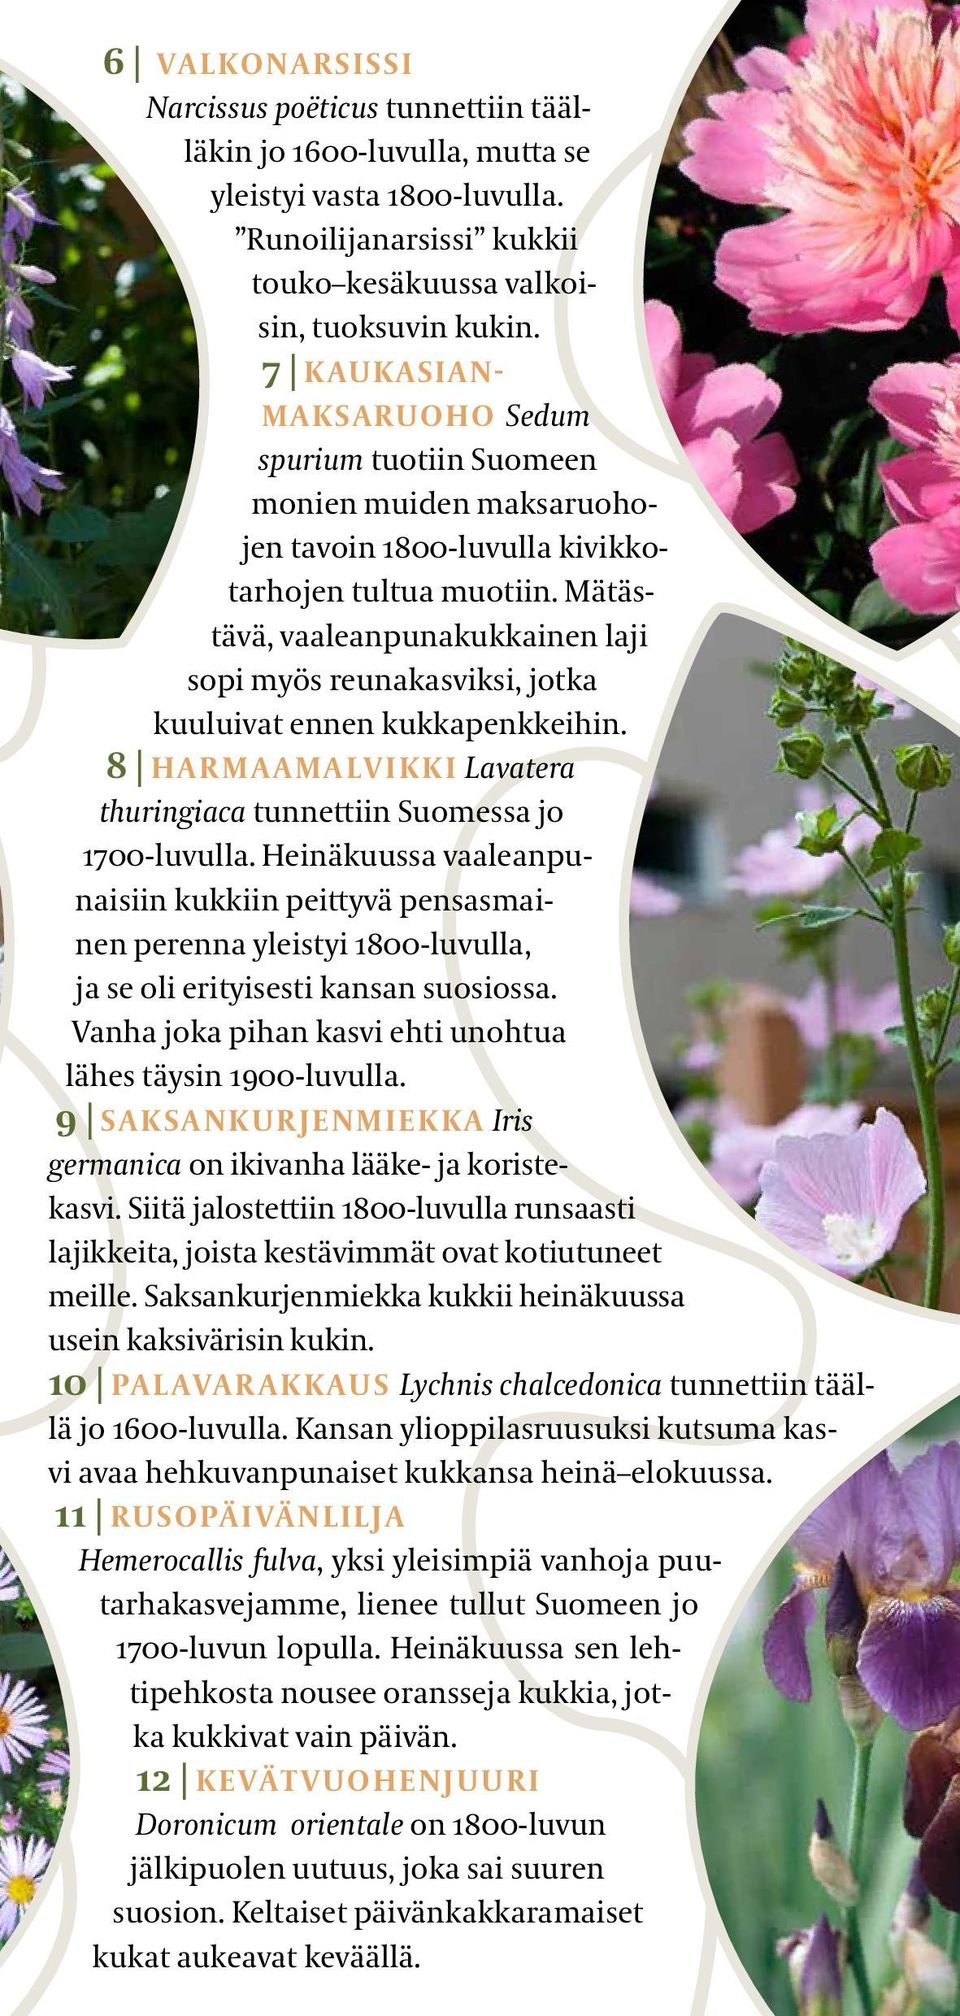 Mätästävä, vaaleanpunakukkainen laji sopi myös reunakasviksi, jotka kuuluivat ennen kukkapenkkeihin. 8 HARMAAMALVIKKI Lavatera thuringiaca tunnettiin Suomessa jo 1700-luvulla.